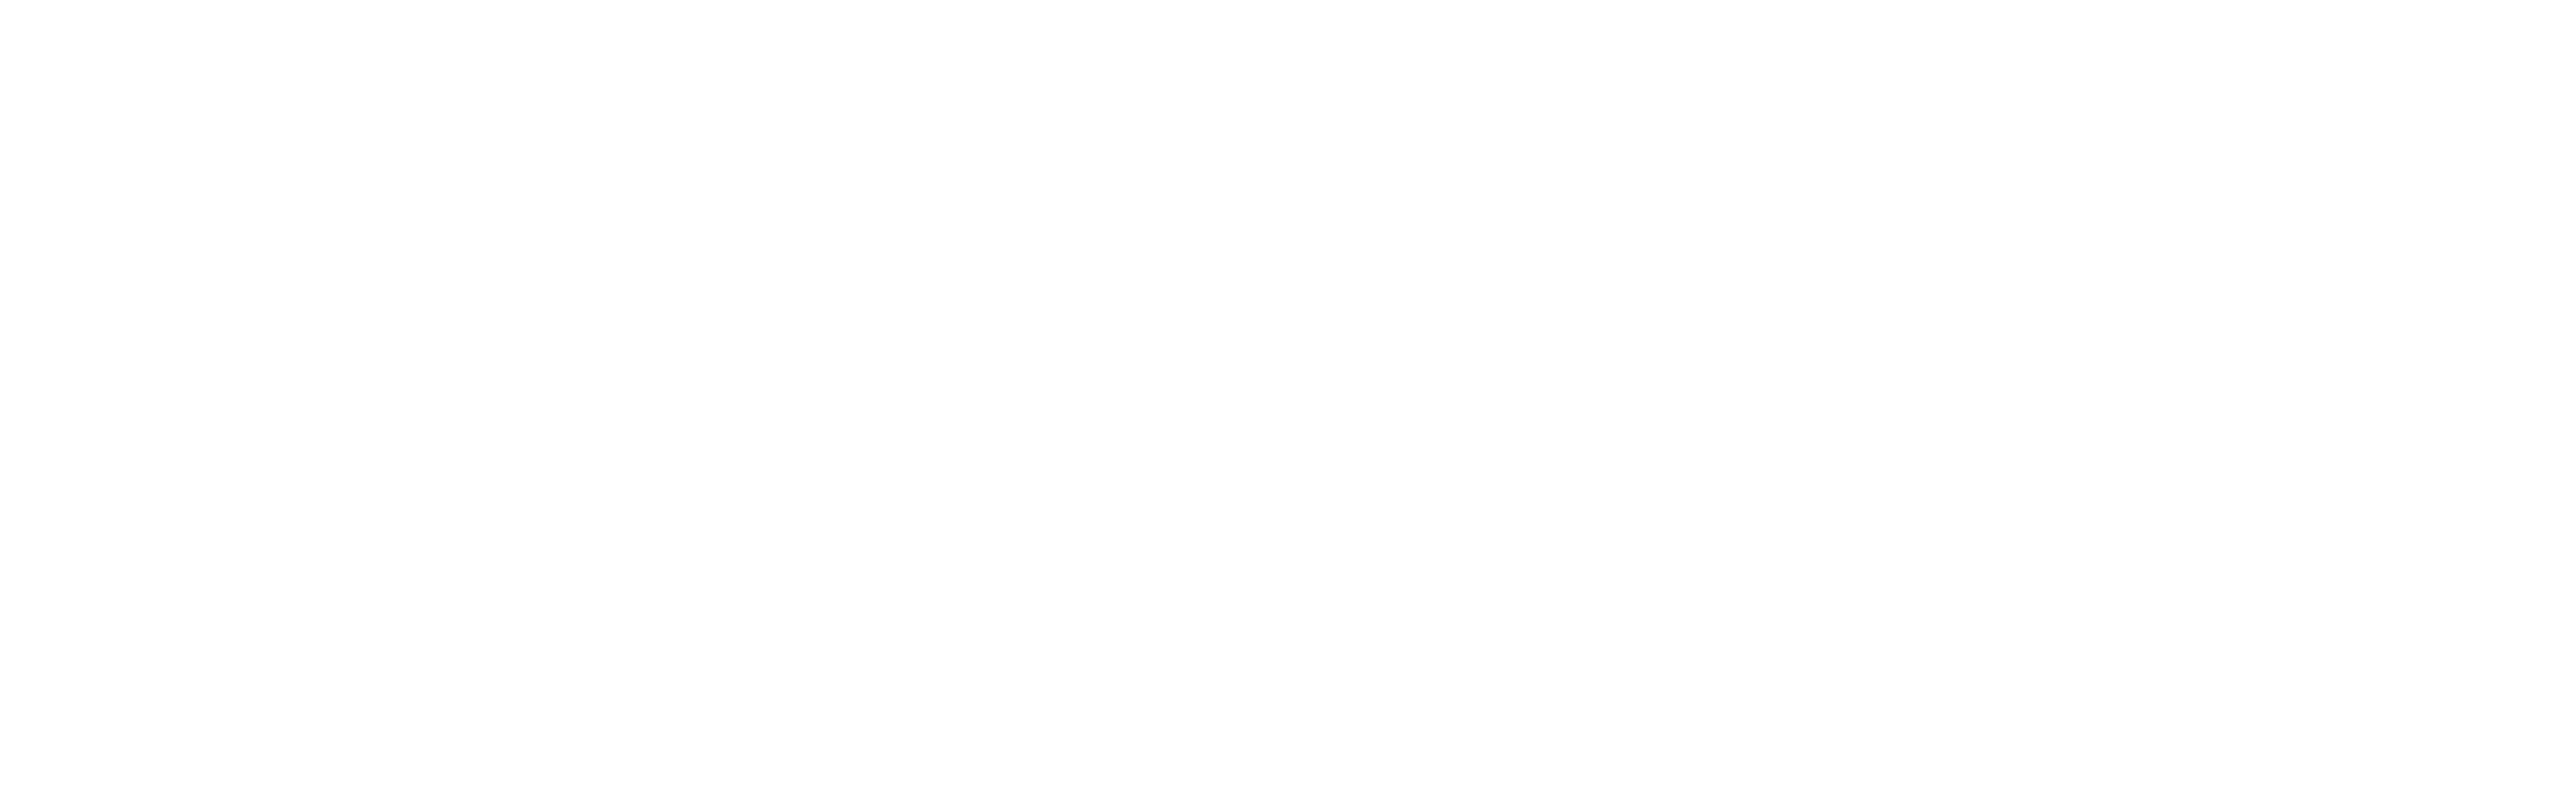 Logo de fuse-telecom.png